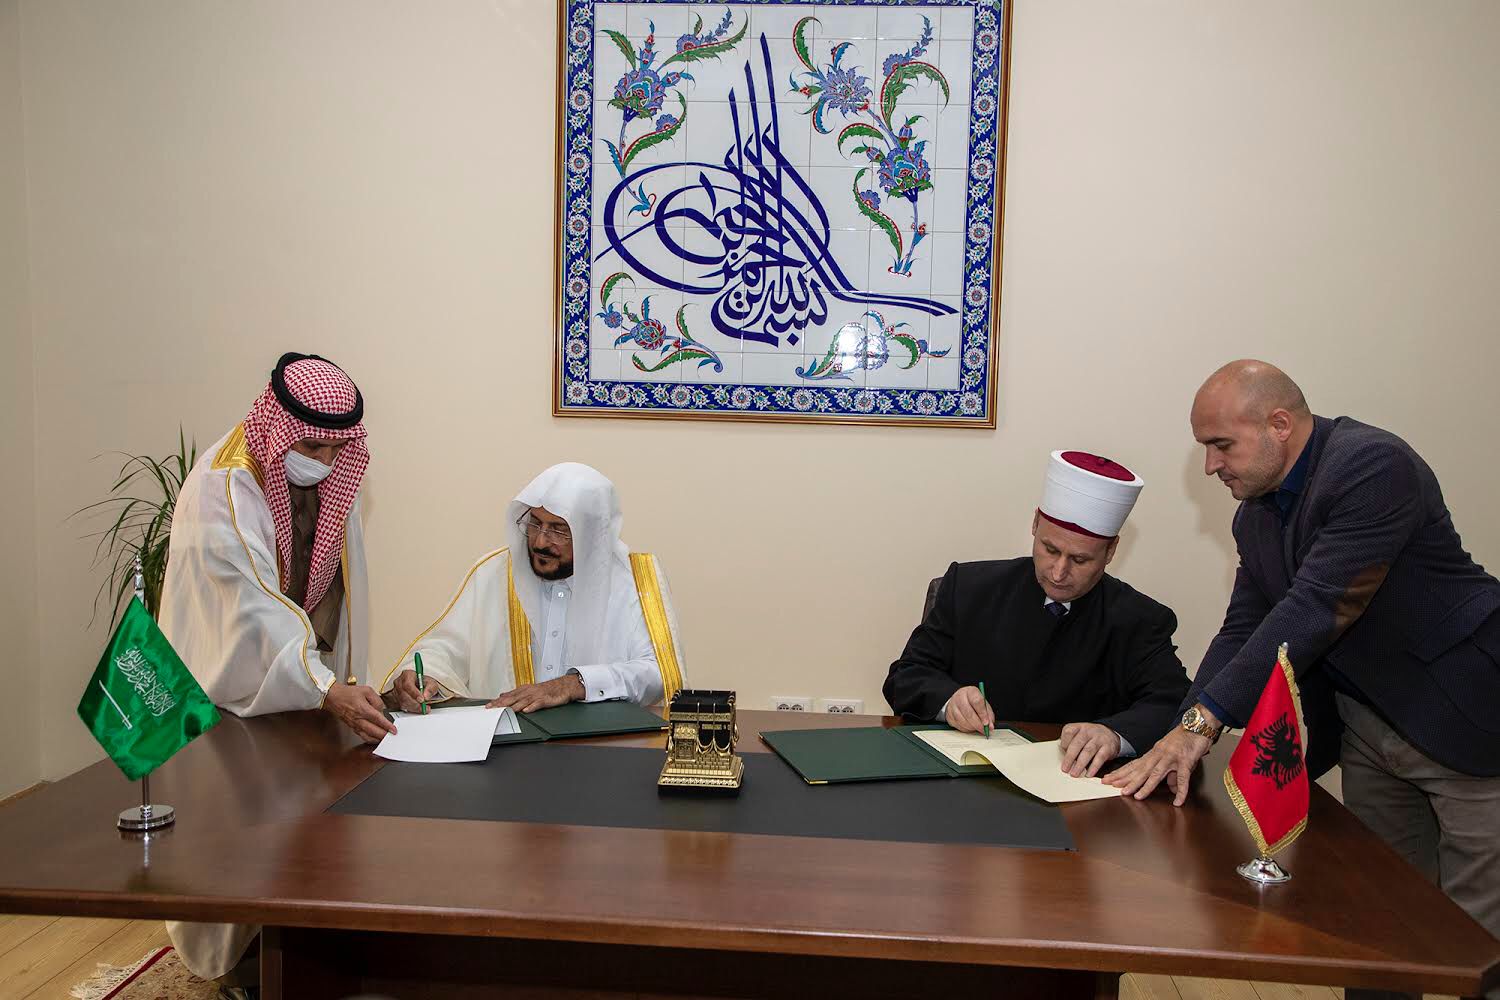 السعودية توقع اتفاقية لتأهيل الدعاة والأئمة في ألبانيا